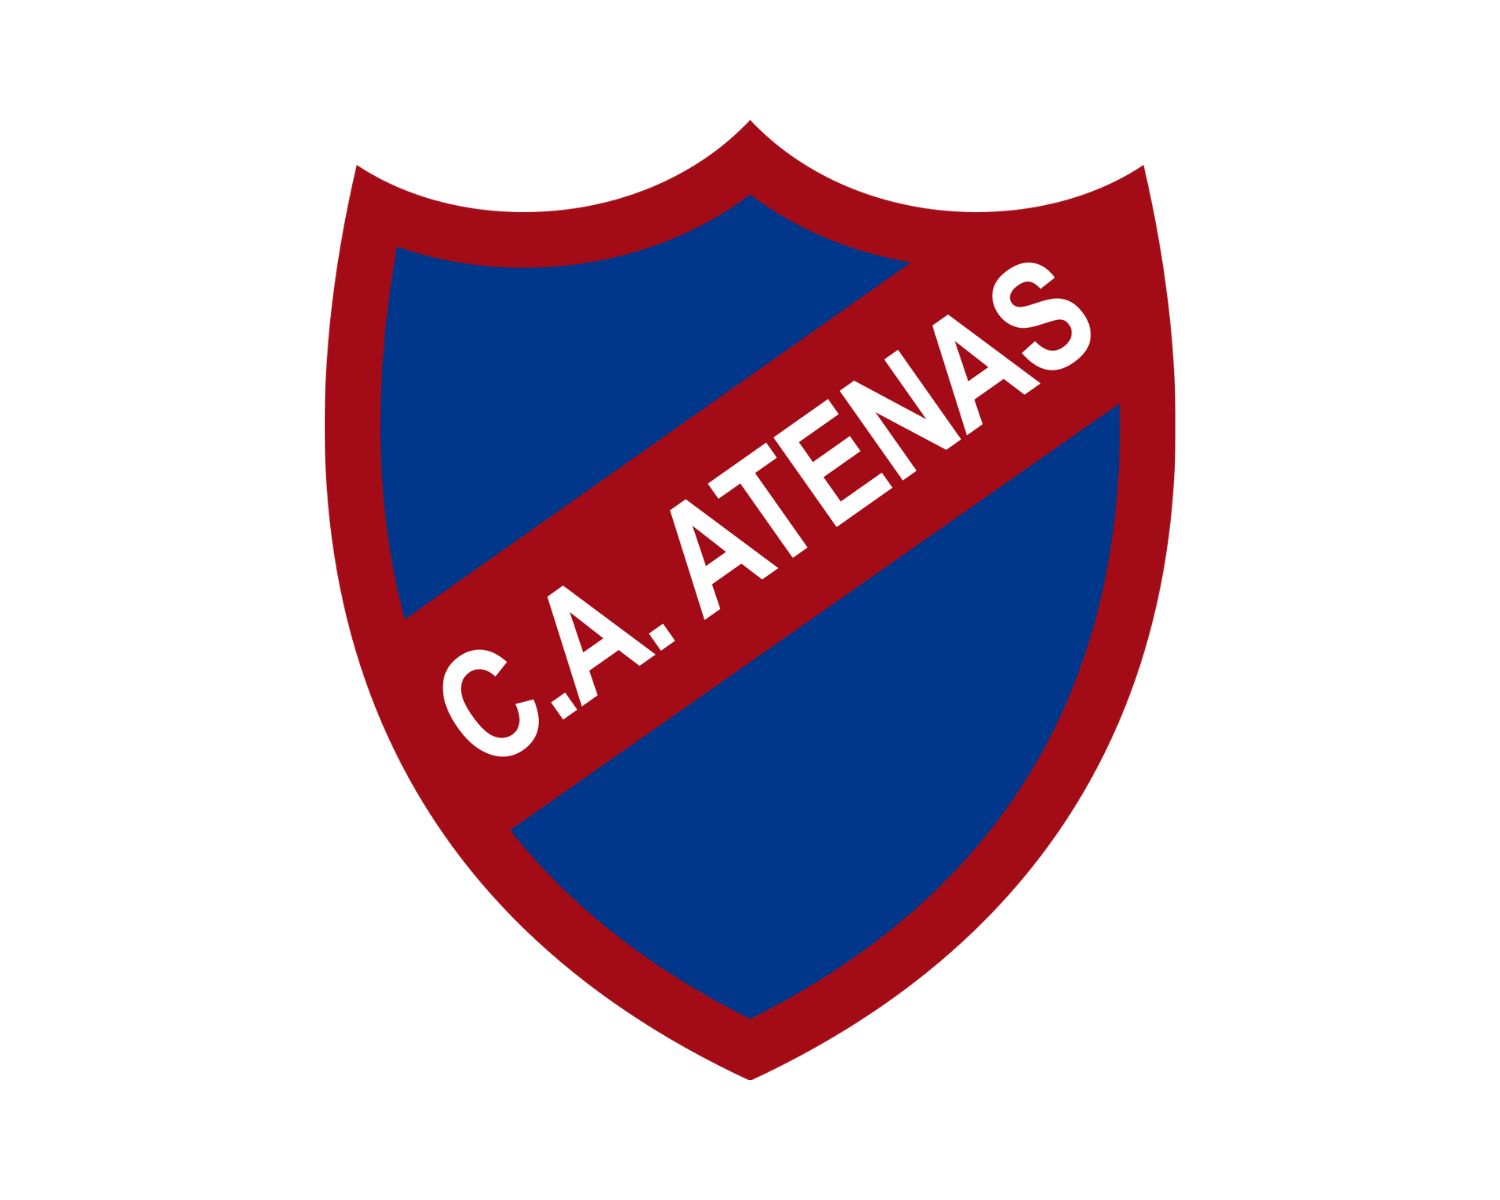 ca-atenas-de-san-carlos-24-football-club-facts